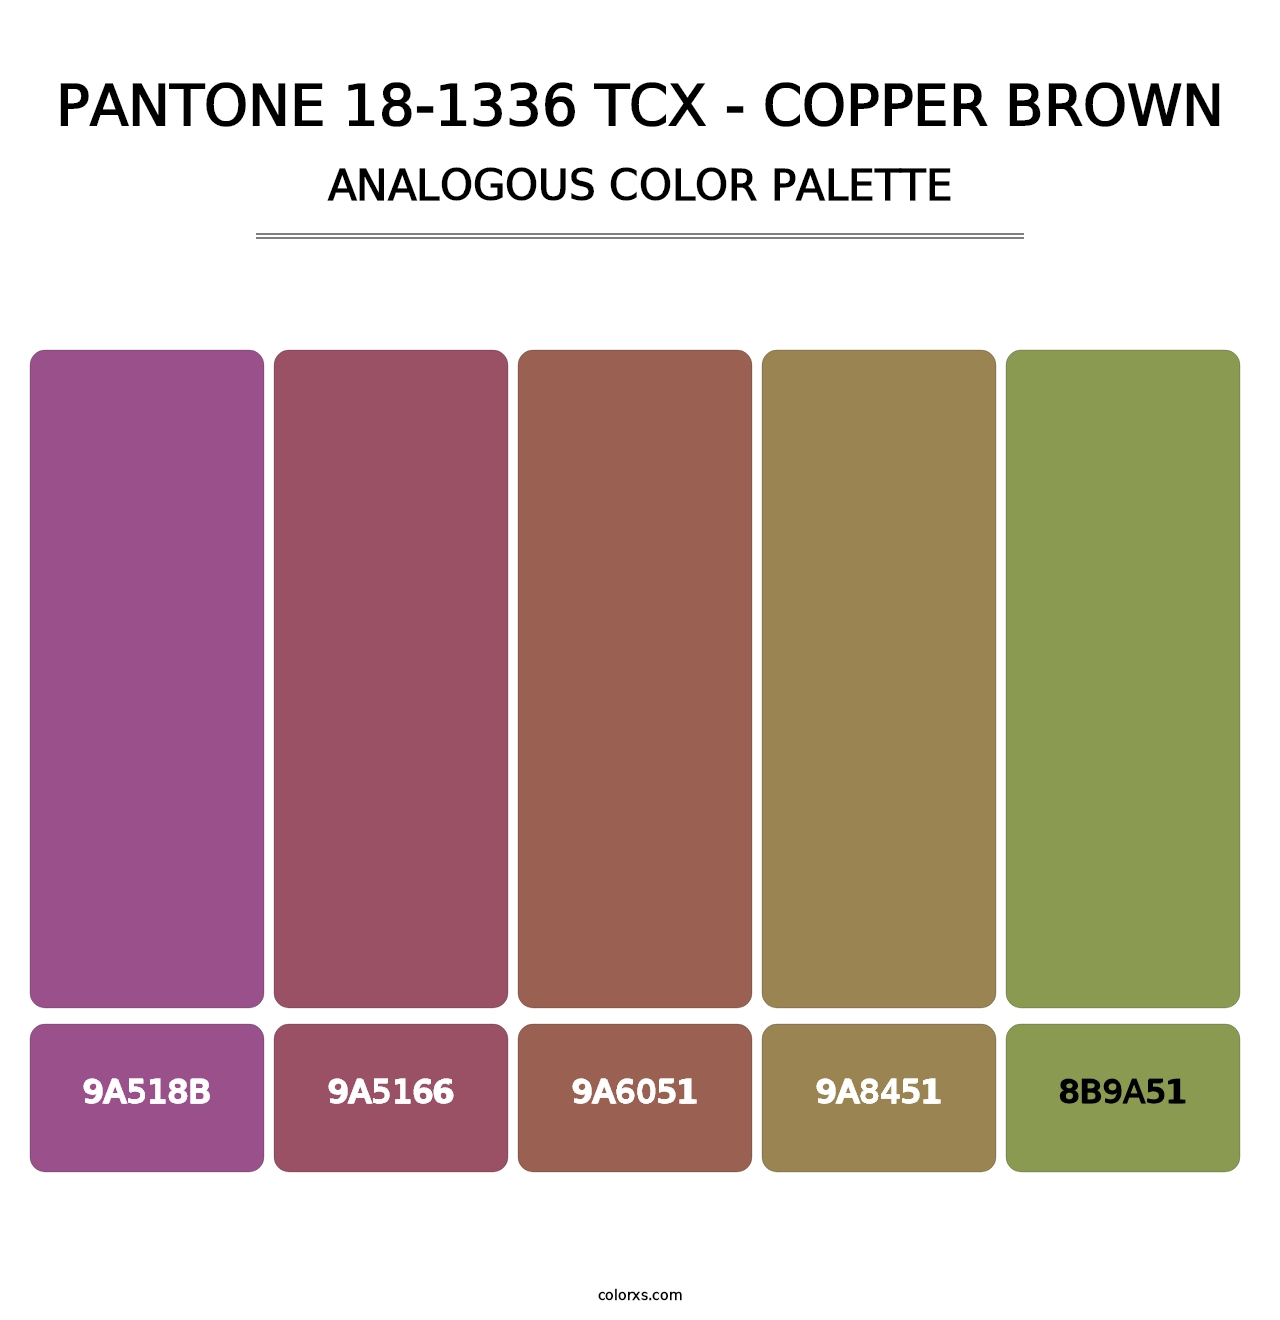 PANTONE 18-1336 TCX - Copper Brown - Analogous Color Palette